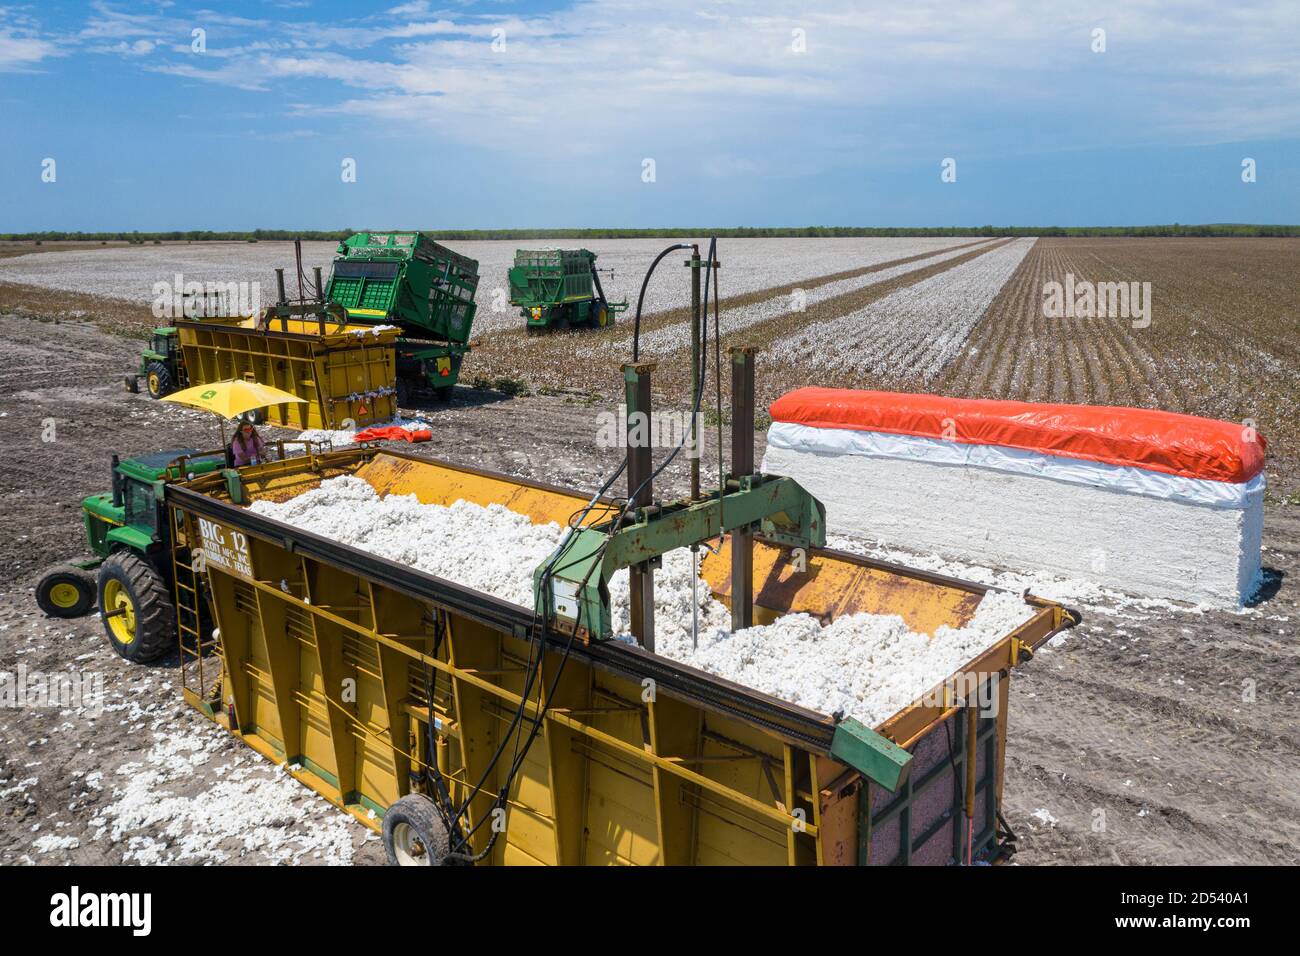 Ein Baukasten aus Baumwollmodulen, bekannt als Stamper, bereitet sich darauf vor, Baumwollbolls während der Ernte am 23. August 2020 in Batesville, Texas, in ein Modul für den Versand auf der Schirmer Farm zu komprimieren. Stompers verwenden einen hydraulischen Stempel und Tramperbalken, um die Baumwolle in Module zu komprimieren, 32 Fuß lang, 7 1/2 Fuß breit und 9 1/2 Fuß hoch. Stockfoto